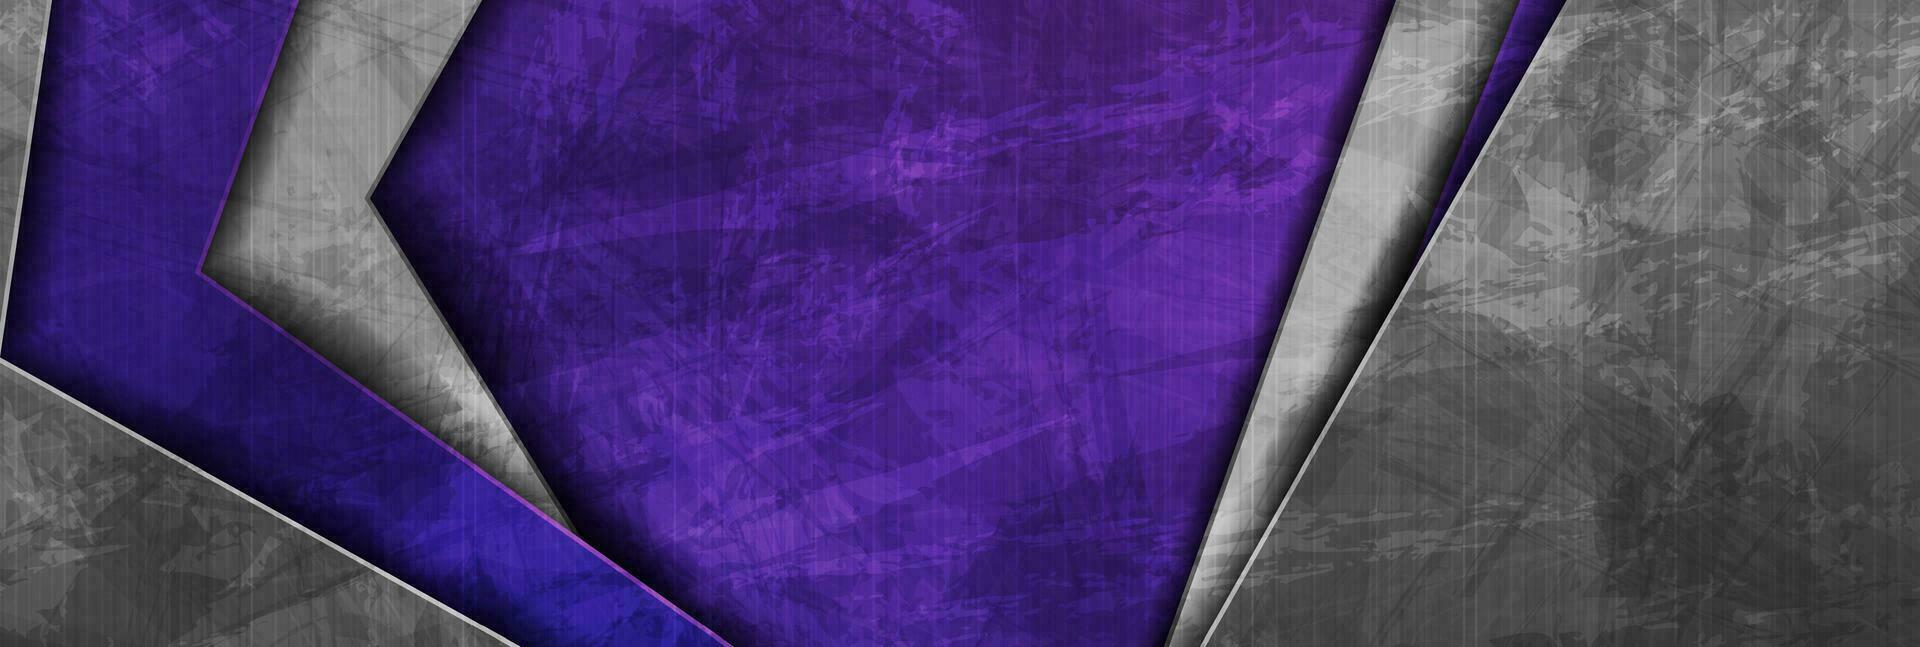 violett und grau Grunge abstrakt Technik korporativ Hintergrund vektor